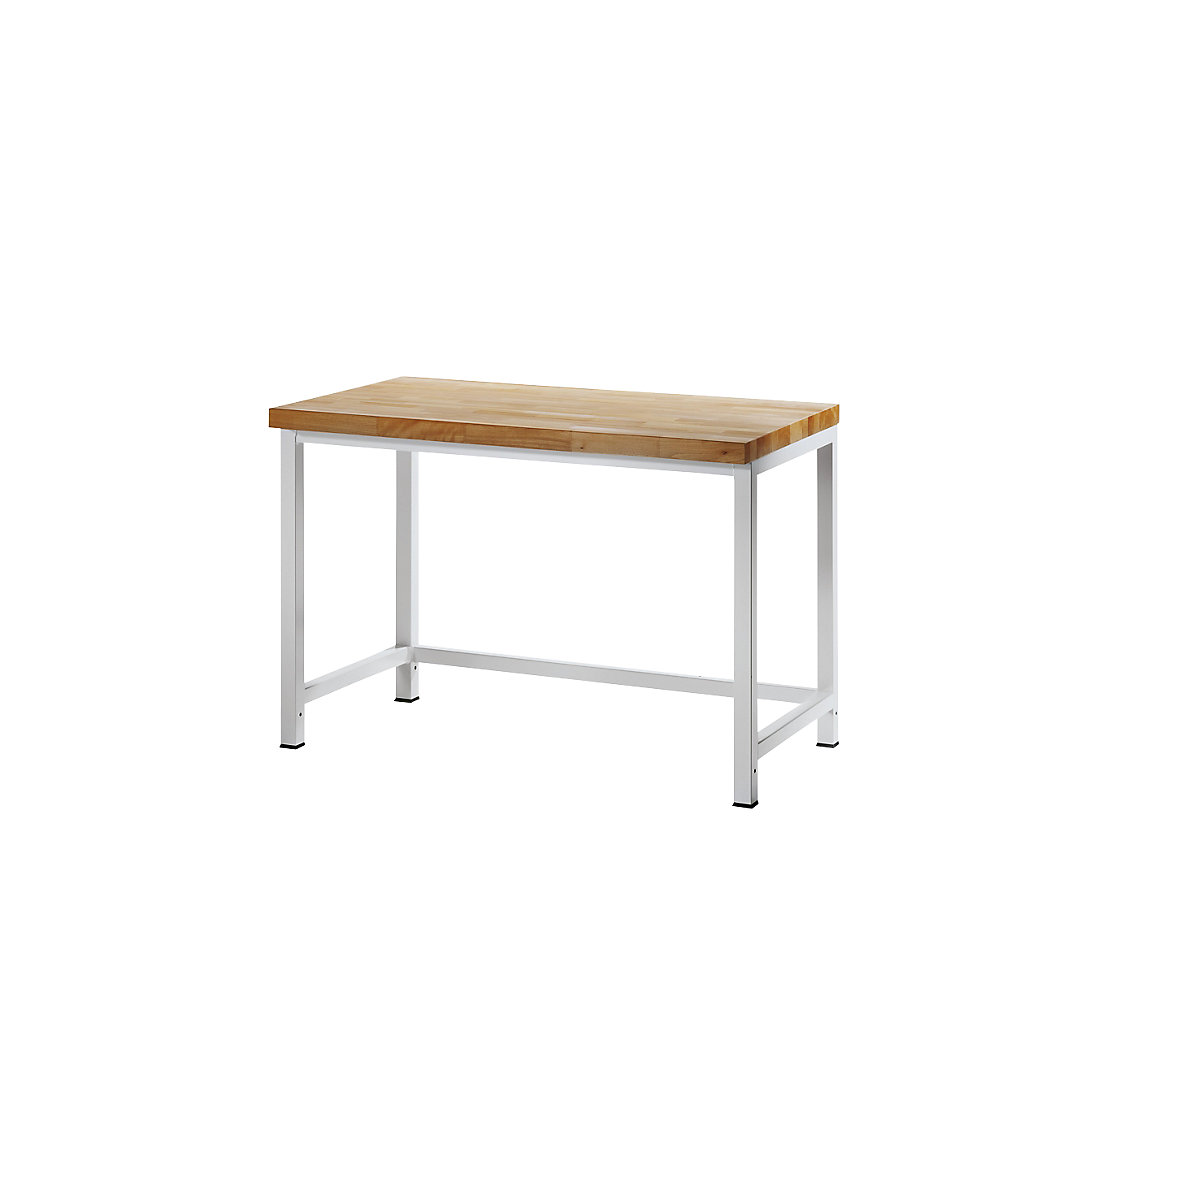 Dílenský stůl s rámovou konstrukcí – RAU, 1 příčná výztuha, hloubka 700 mm, šířka 1250 mm-4